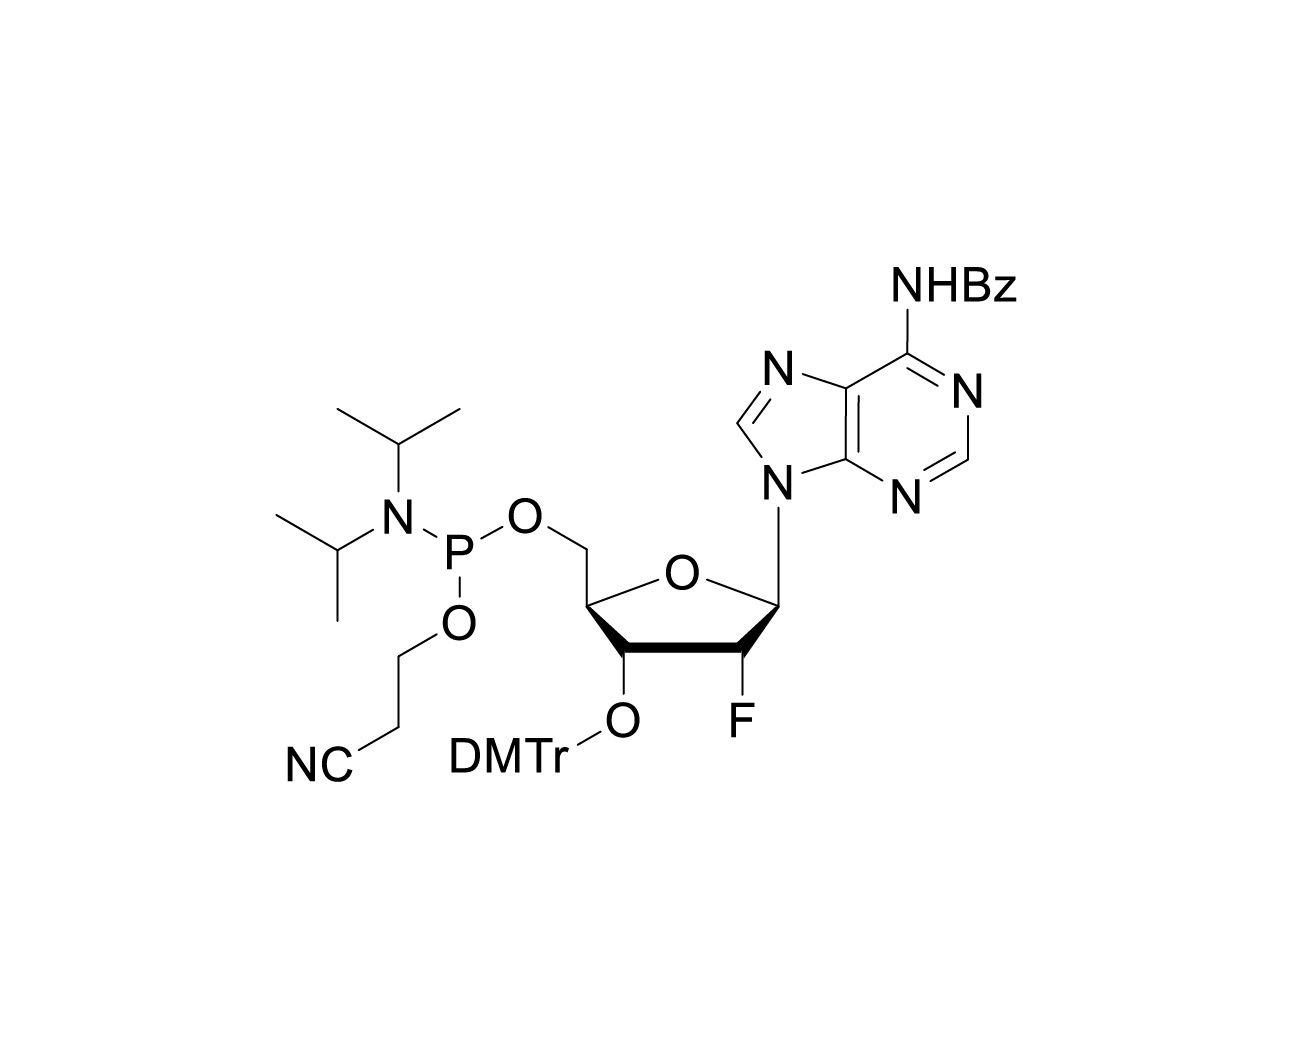 3'-O-DMTr-2'-F-dA(Bz)-5'-CE-Phosphoramidite